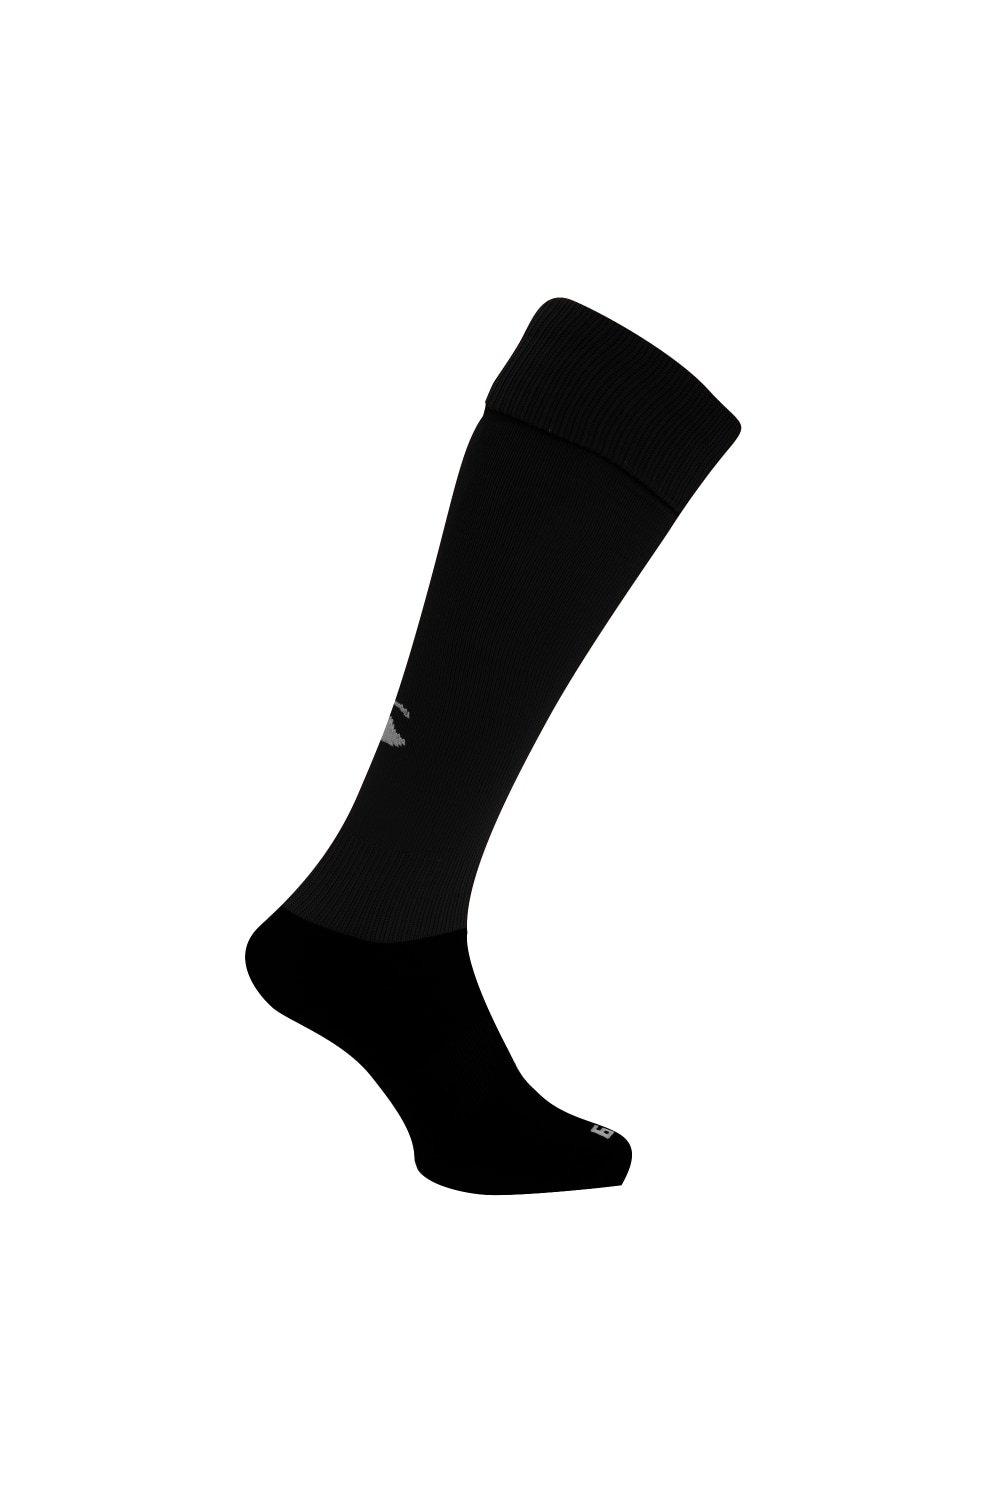 Спортивные носки для игры в регби Canterbury, черный регбийка игровая размер s русский 48 сборной россии по регби canterbury